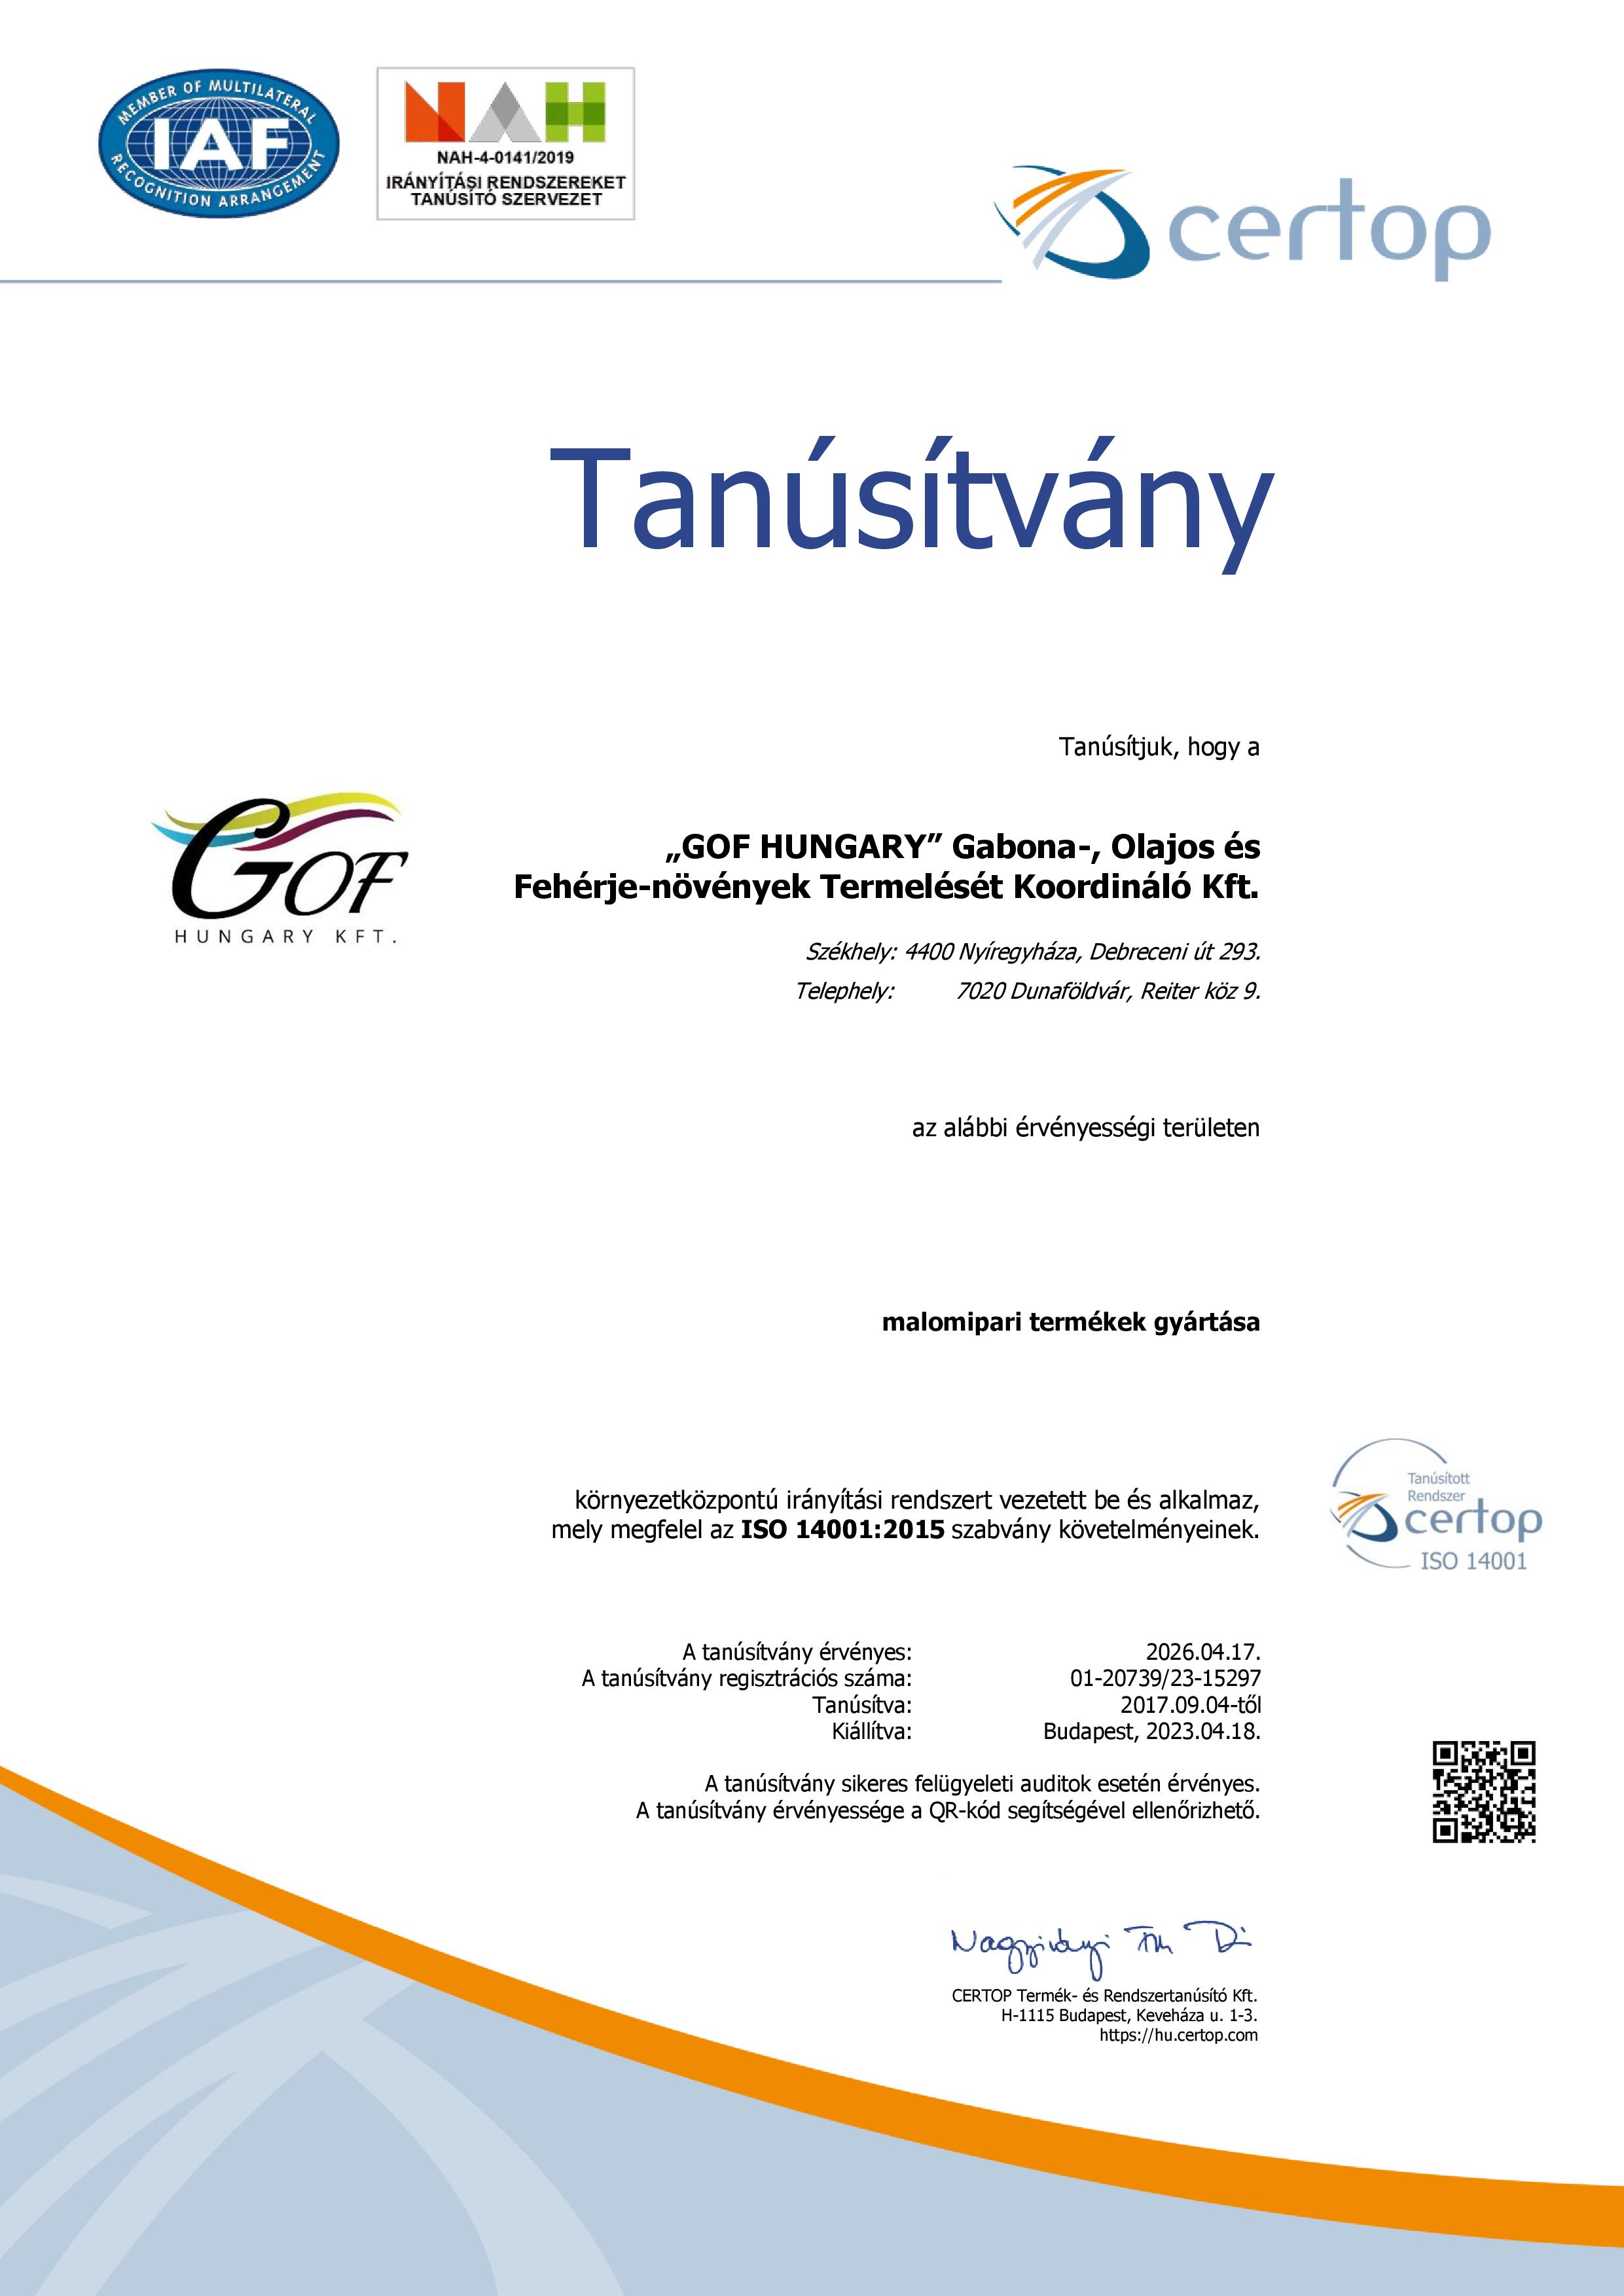 tanusitvany_KIR_magyar_HU20739-23_2023-04-18.jpg (412 KB)